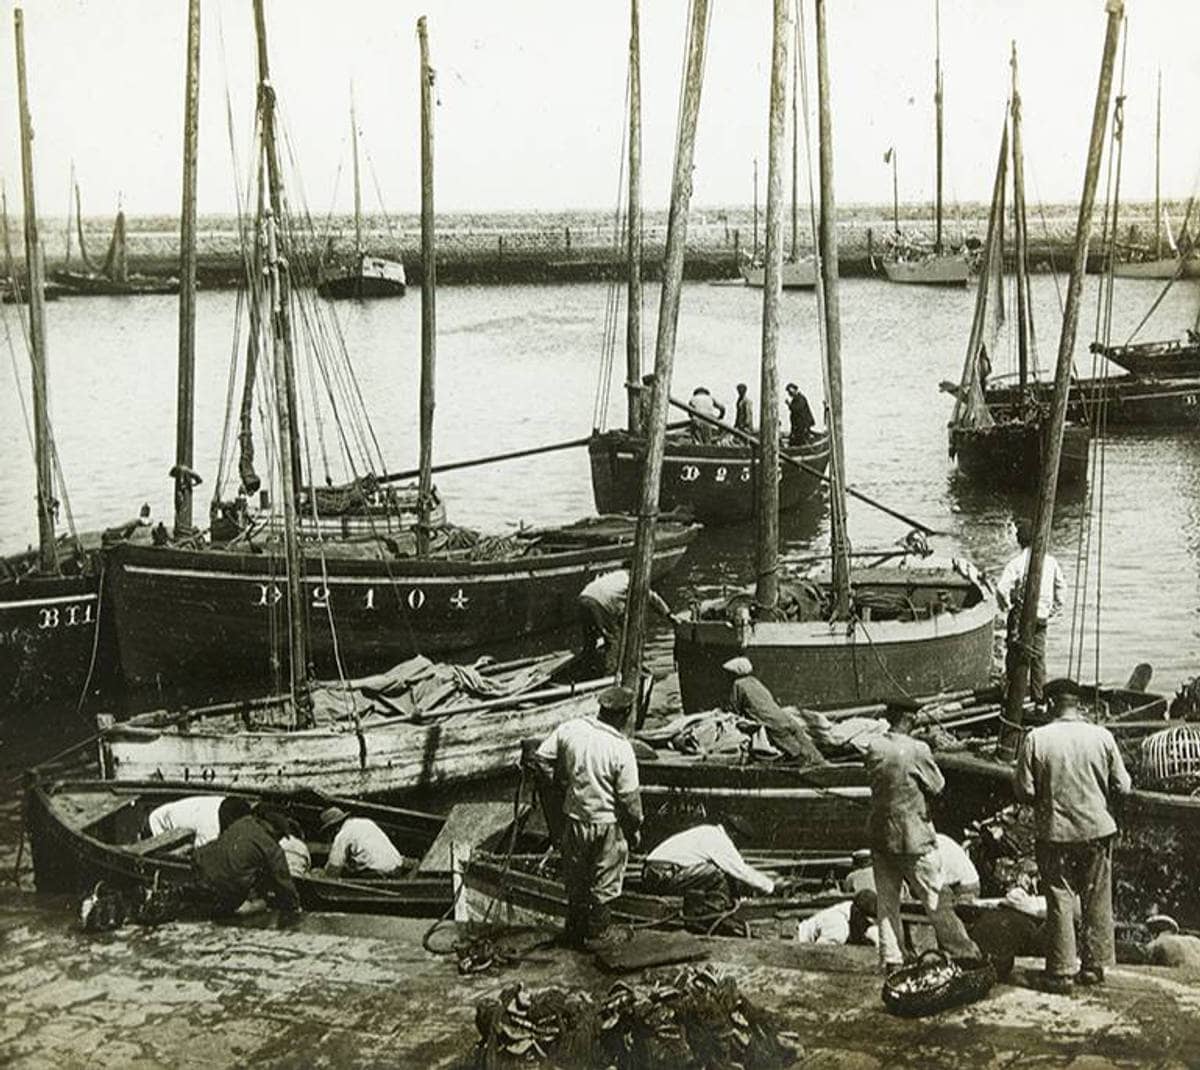 Débarquement des sardines, Douarnenez, début 20e s.